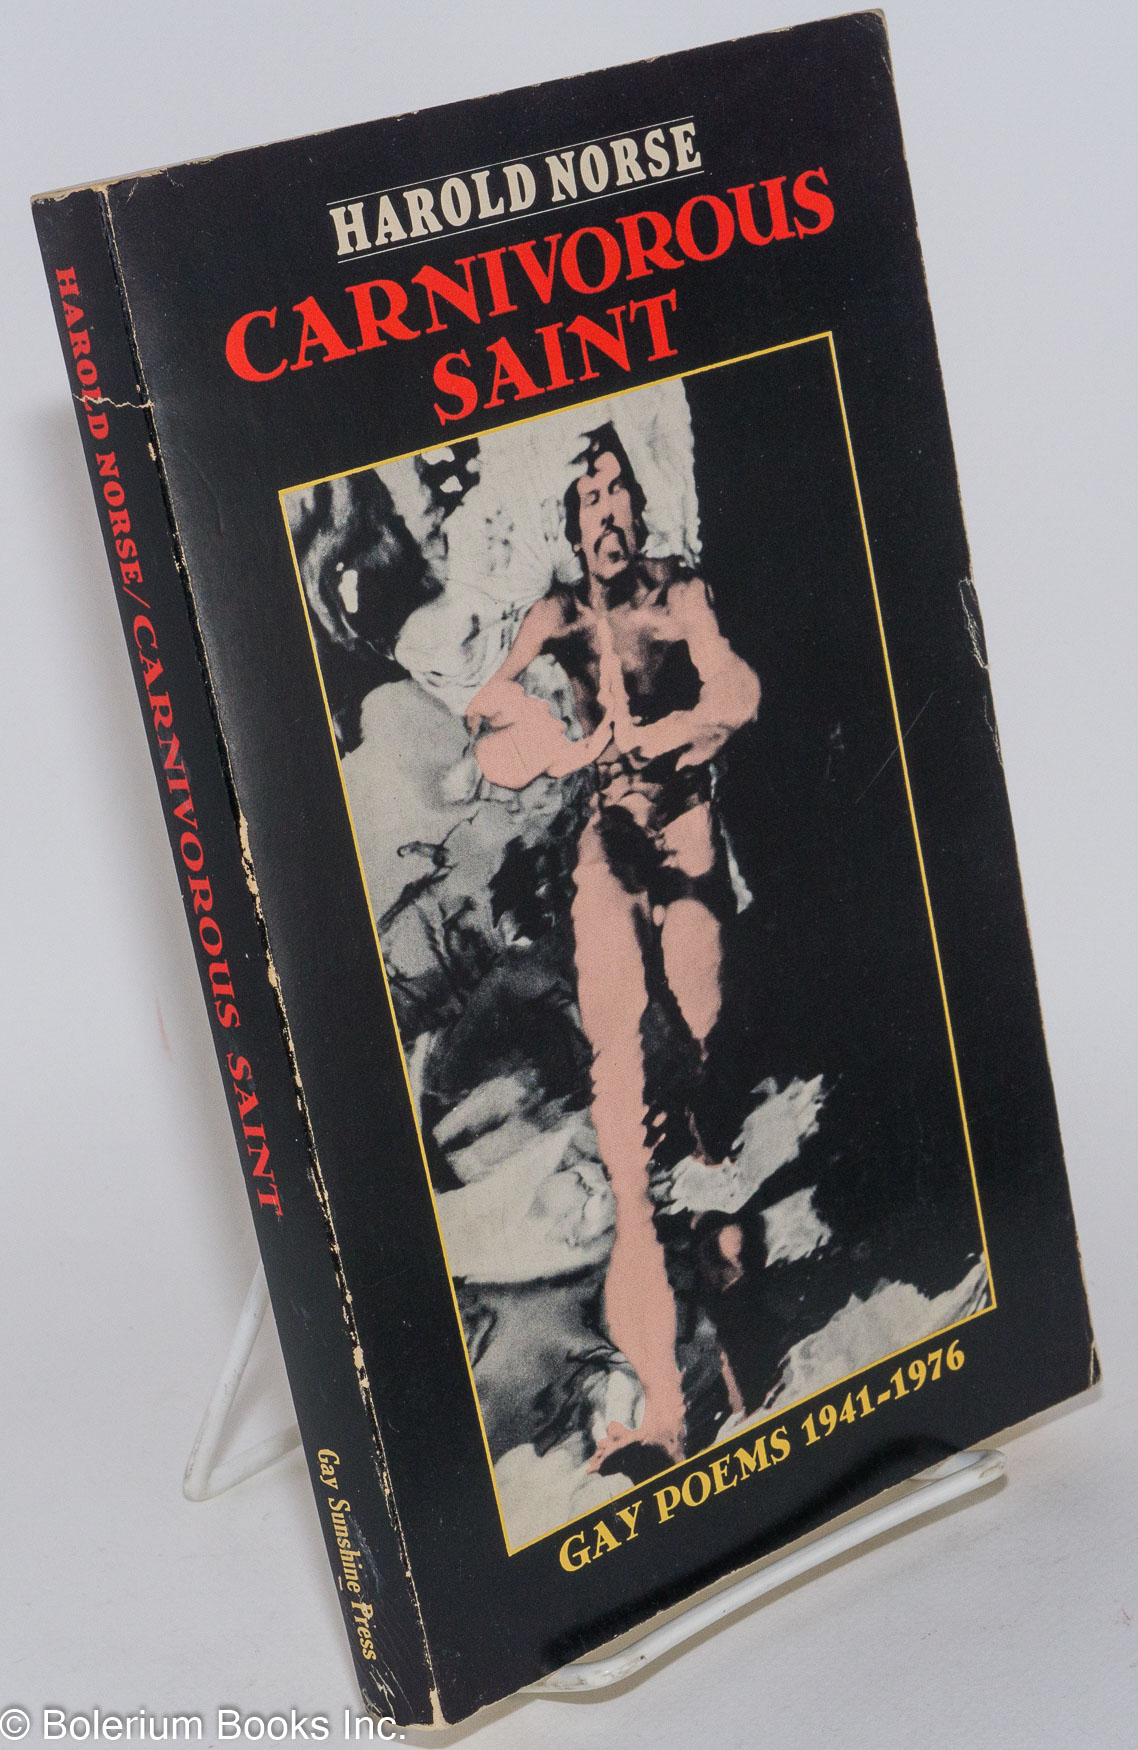 Carnivorous Saint: gay poems 1941-1976 - Norse, Harold